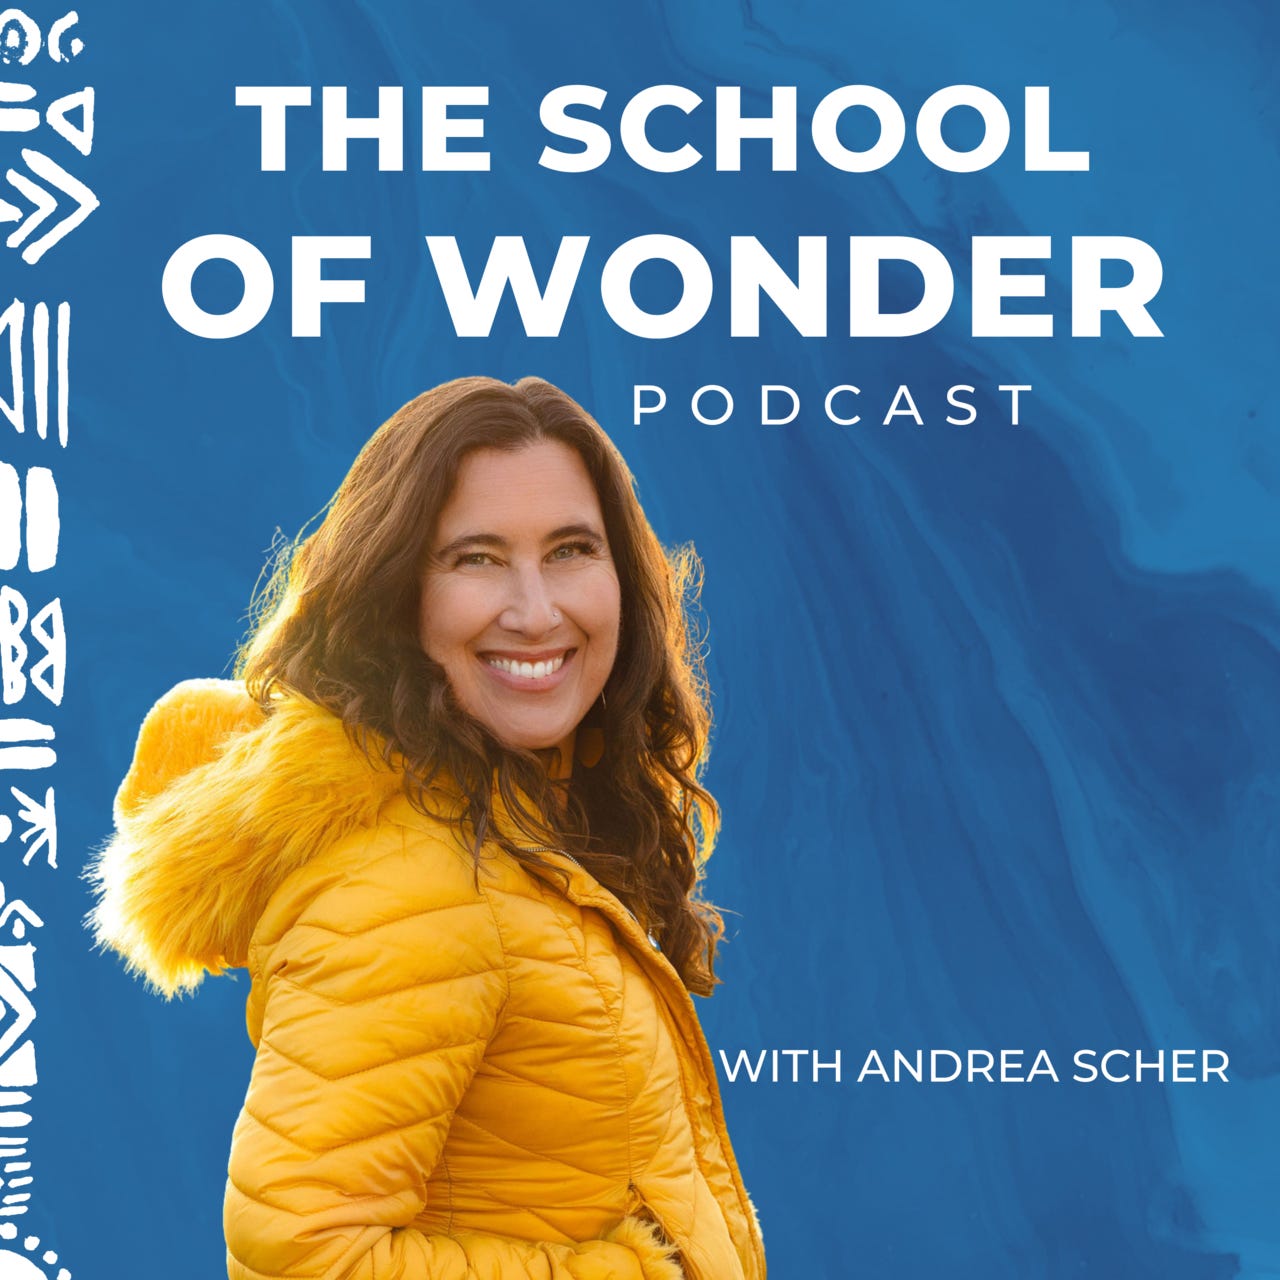 The School of Wonder with Andrea Scher